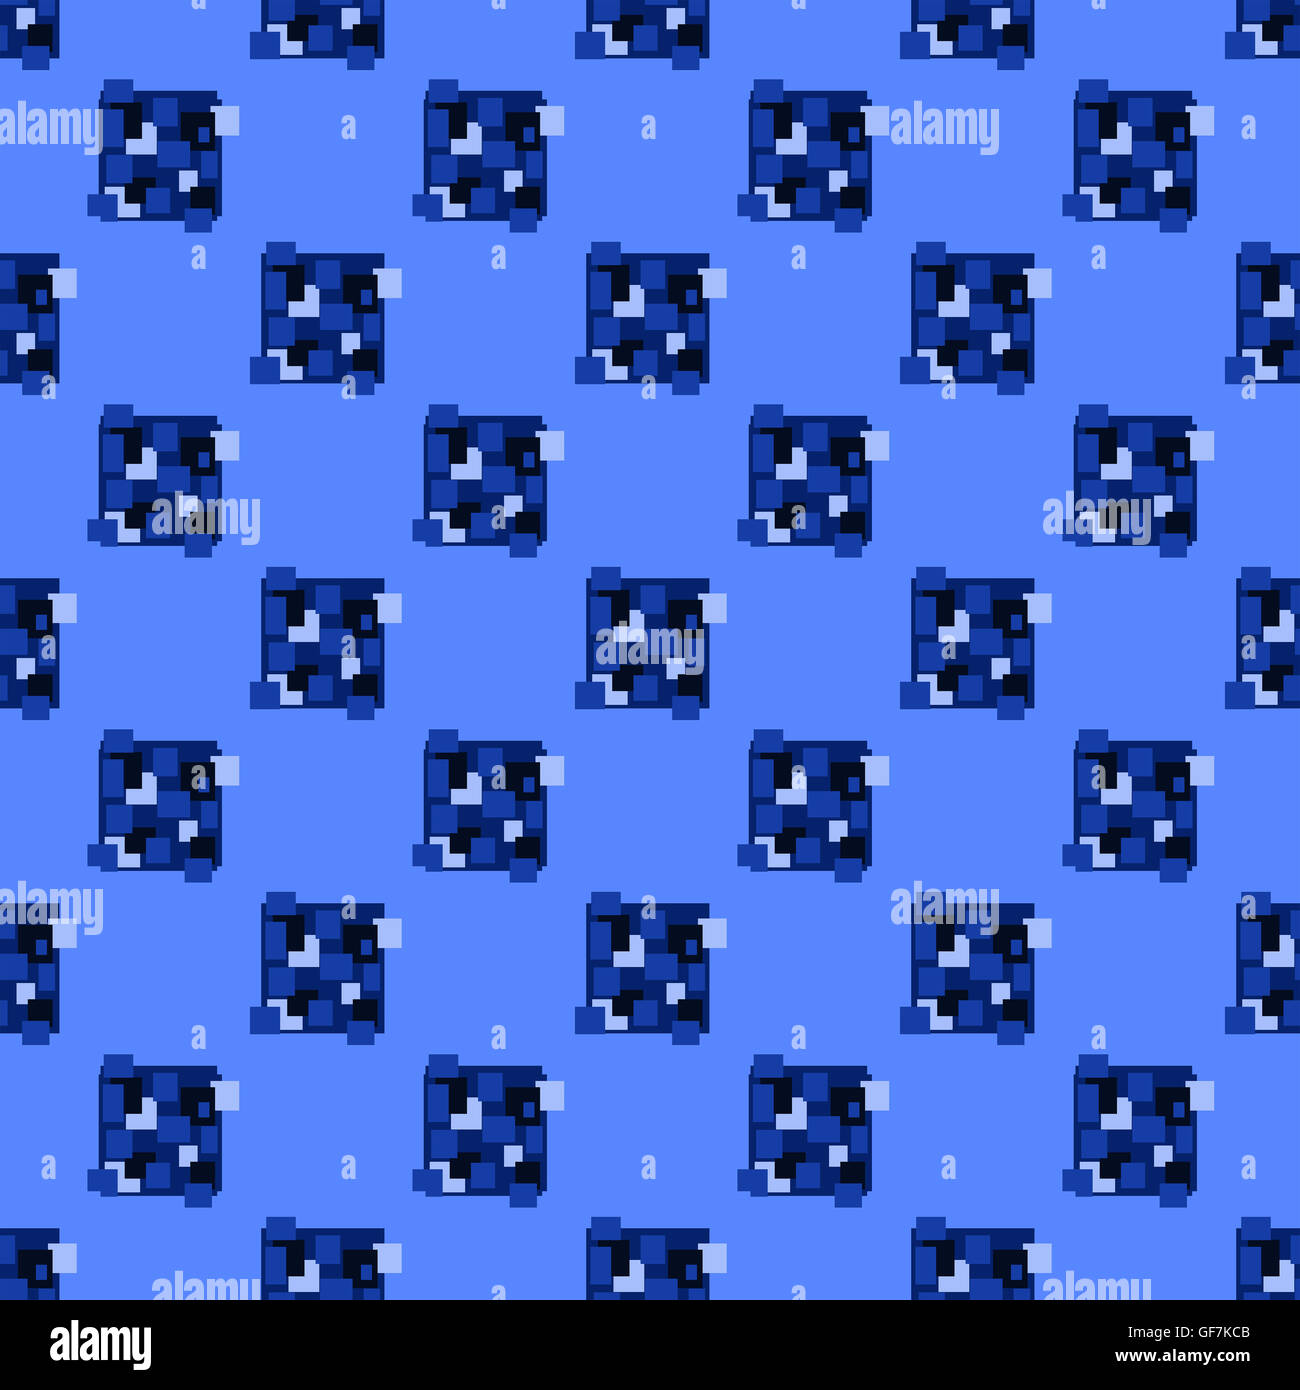 Retrolook blaue Quadrate und Rechtecke Muster in einem gekachelten nahtlose Wiederholung Design auf blassen blauen Hintergrund quadratische format Stockfoto